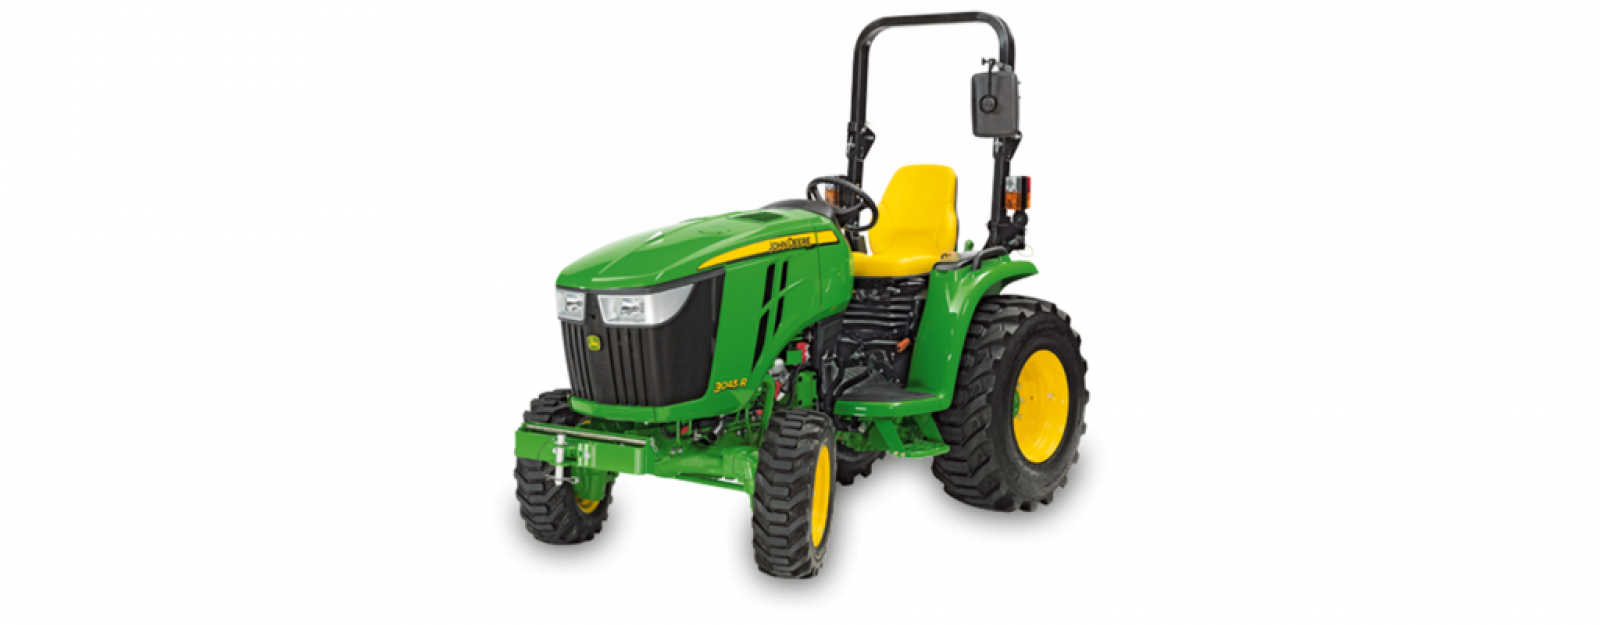 John Deere 3045R Compact Tractor